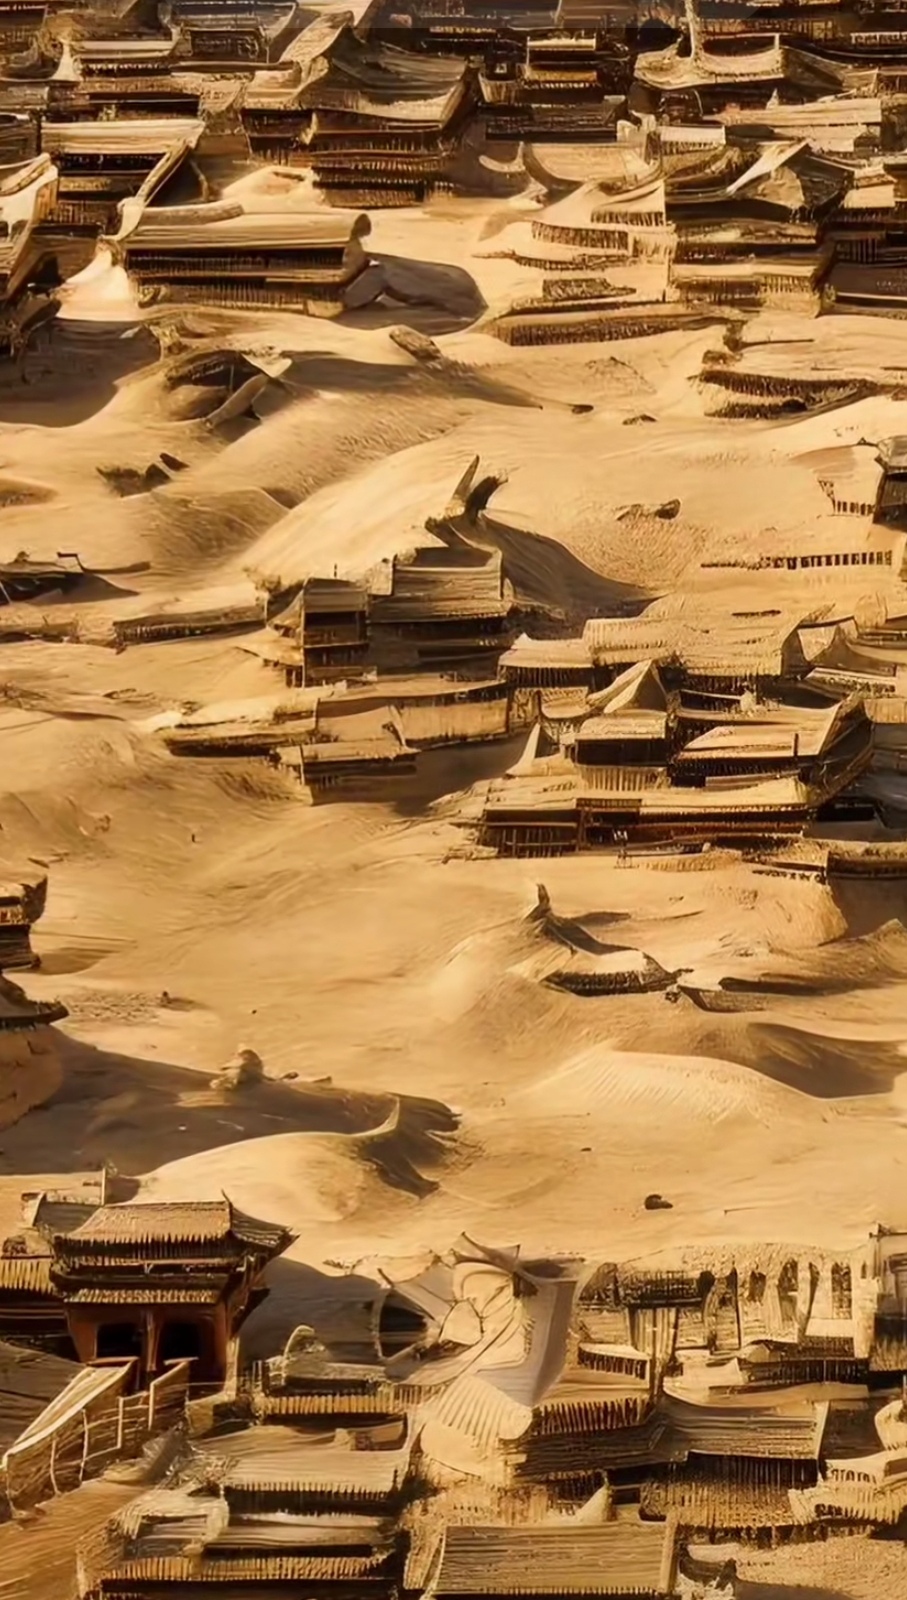 楼兰古城位于新疆塔克拉玛干沙漠,是丝绸之路上古老而神秘的城市